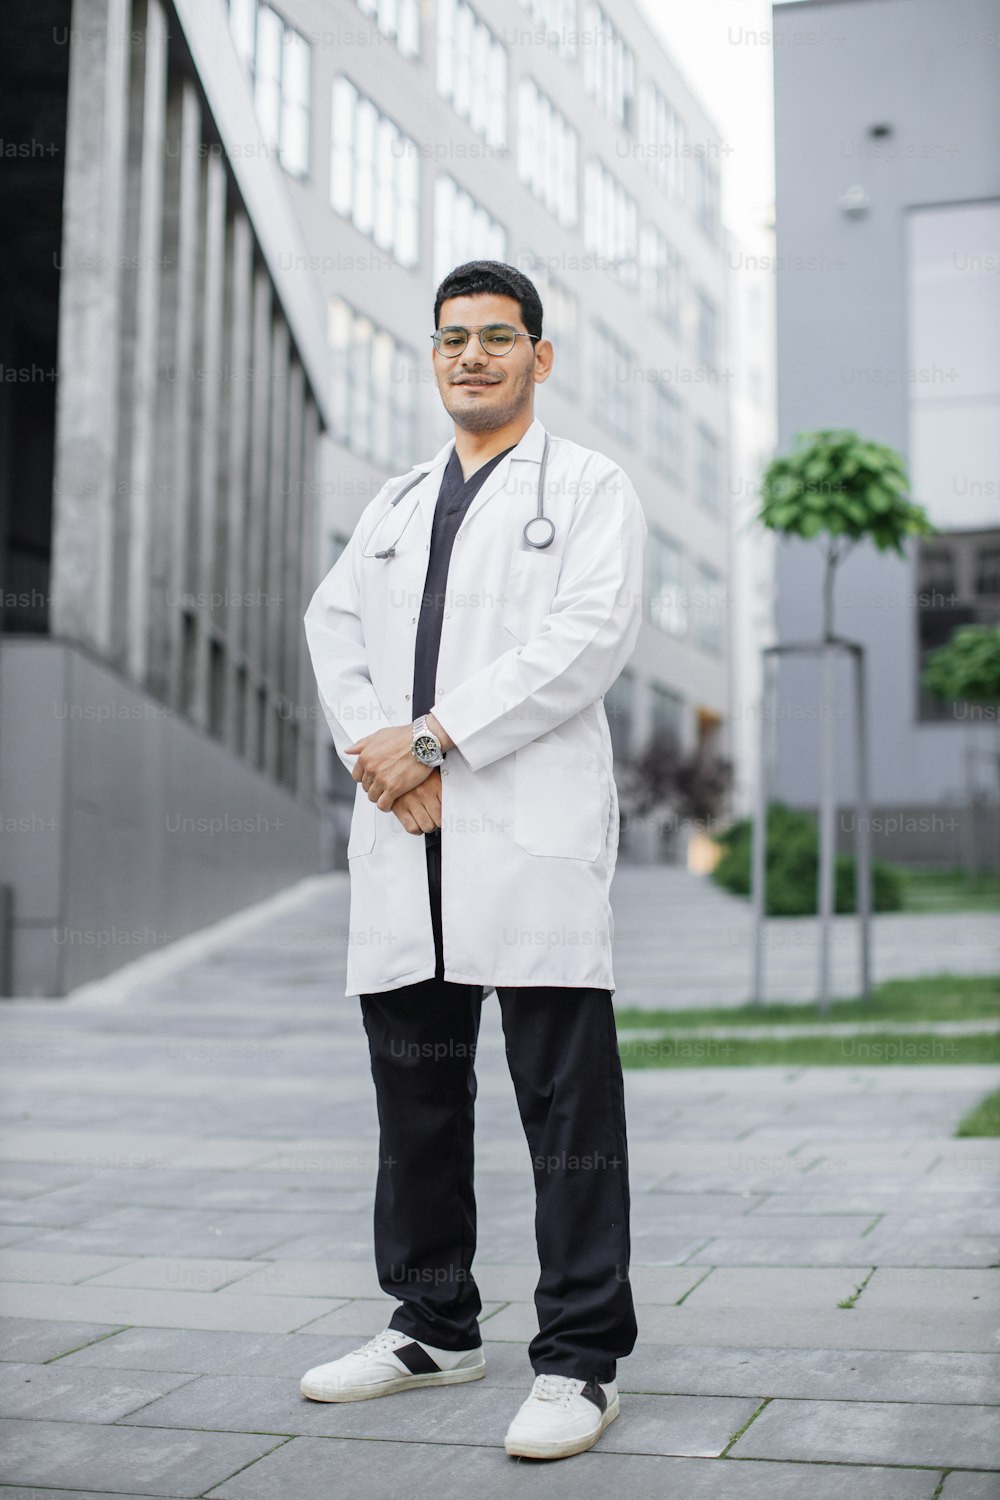 Ein junger, gutaussehender saudi-arabischer Arzt lächelt vor dem Krankenhaus. Ganzkörperporträt eines männlichen Medizinstudenten im weißen Kittel, der vor einem modernen Universitätsgebäude oder einer Klinik posiert